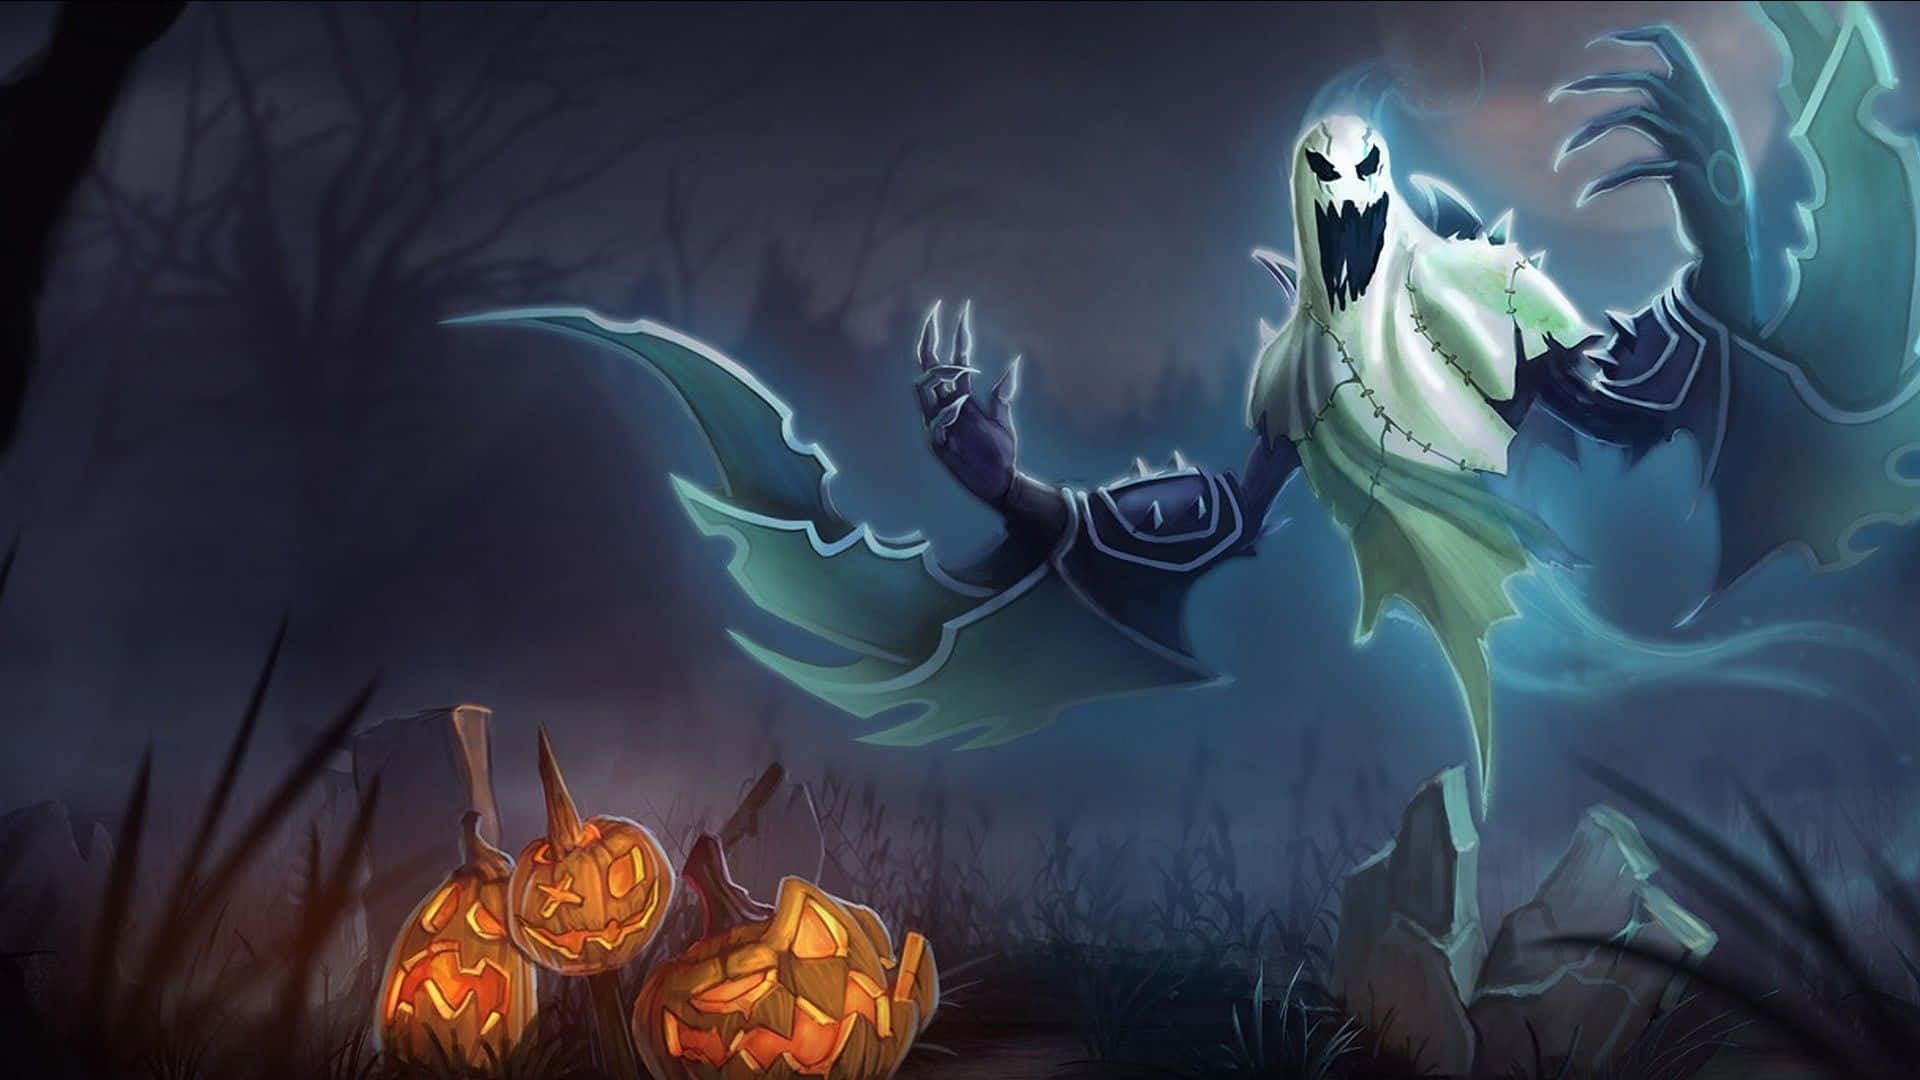 _unespeluznante Fondo De Pantalla Para Halloween Con Un Aterrador Esqueleto En El Centro._ Fondo de pantalla